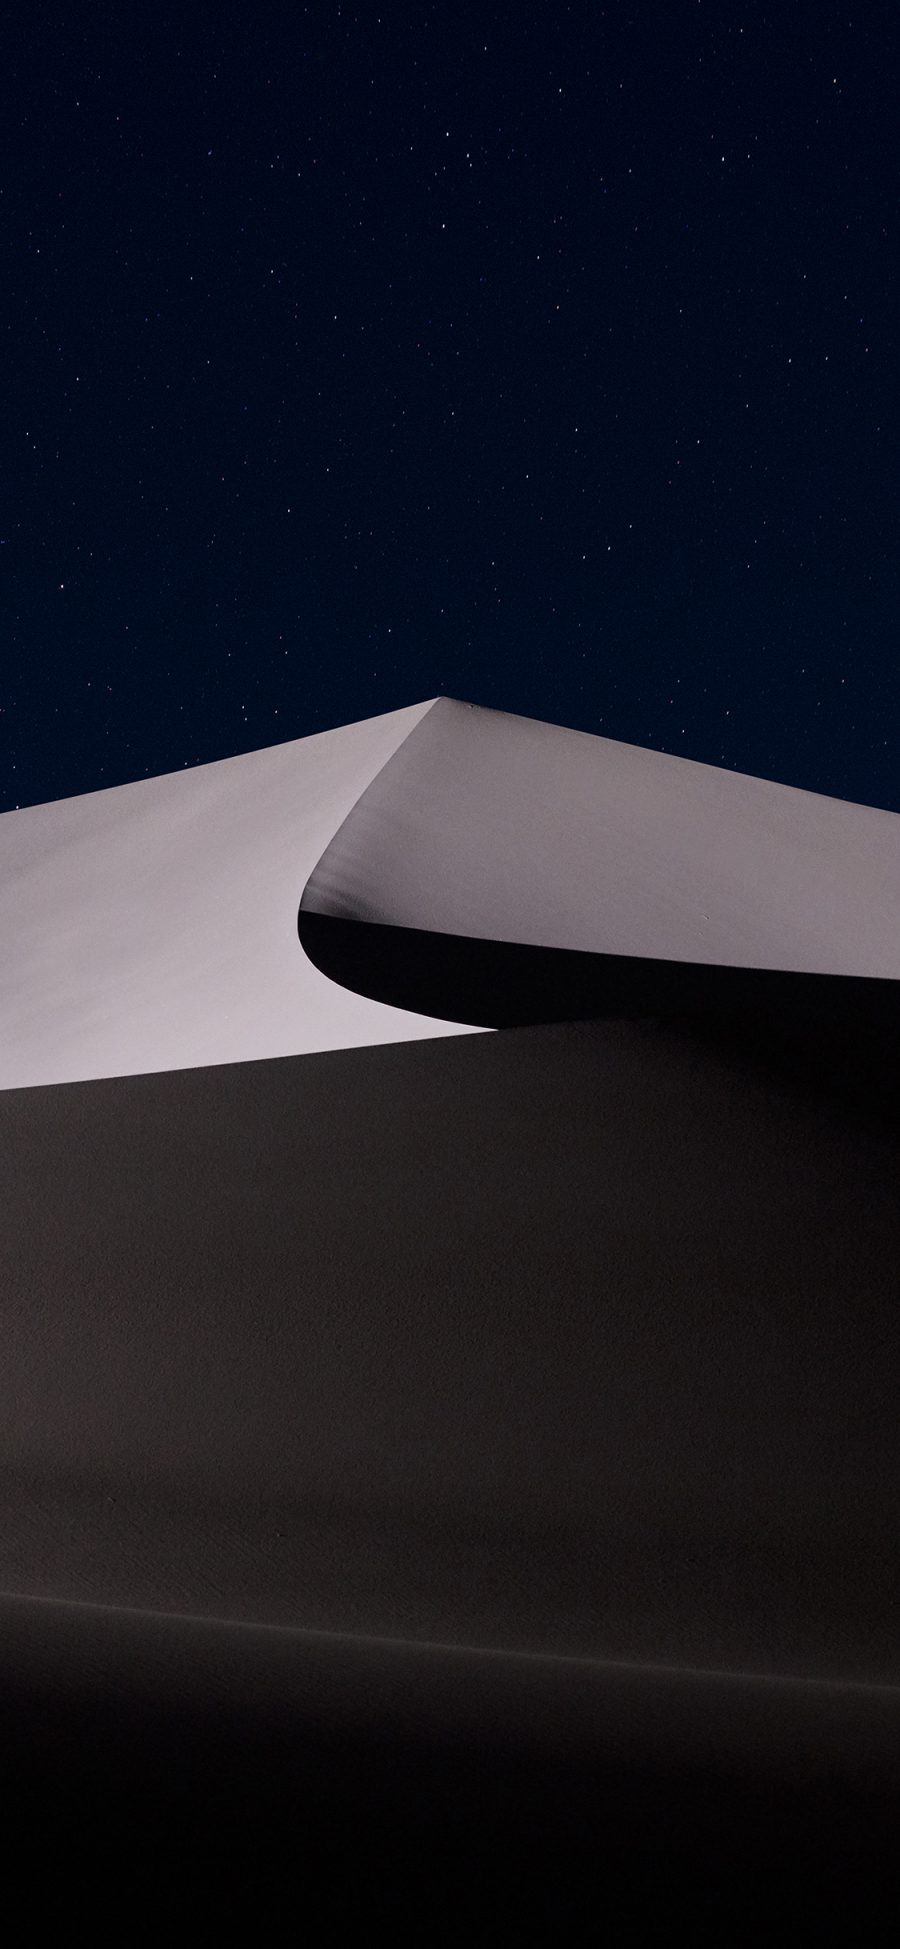 [2436×1125]沙漠 炫酷 静谧 夜空 线条 苹果手机壁纸图片